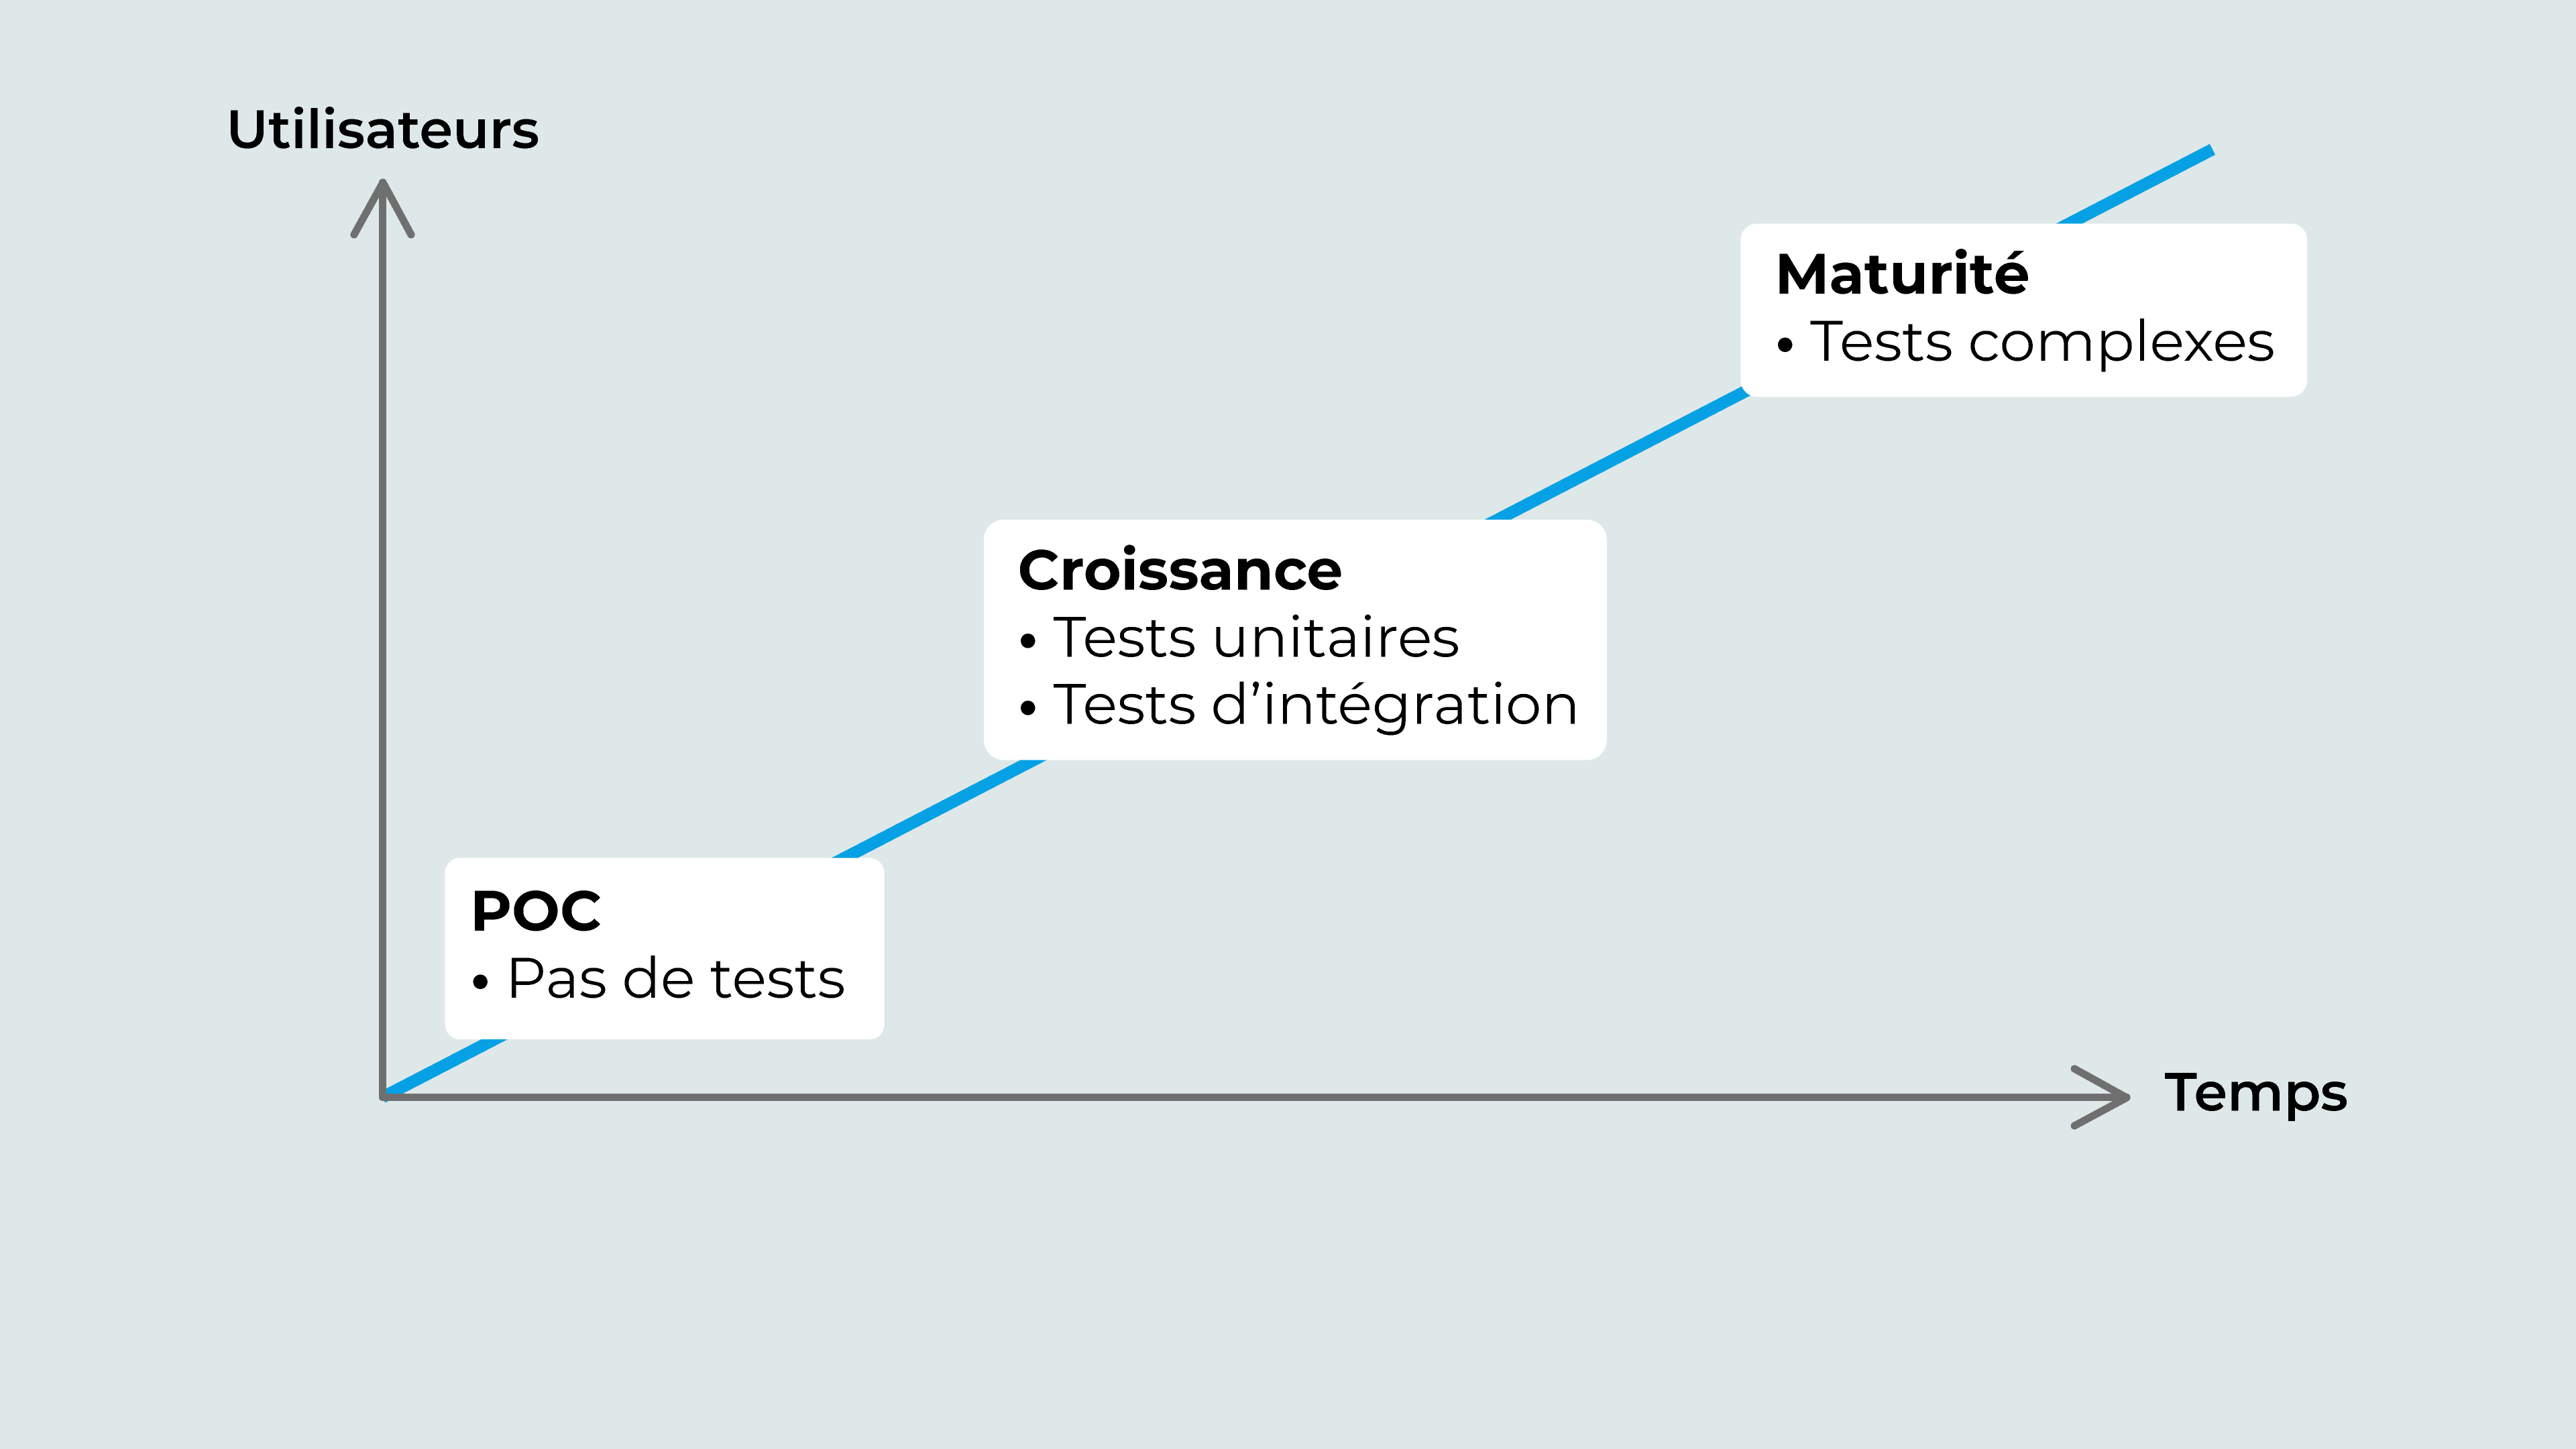 Les différentes phases du cycle de vie d'un produit avec leurs tests associés. POC, pas de tests. Croissance, tests unitaires et d'intégration. Maturité, tests complexes